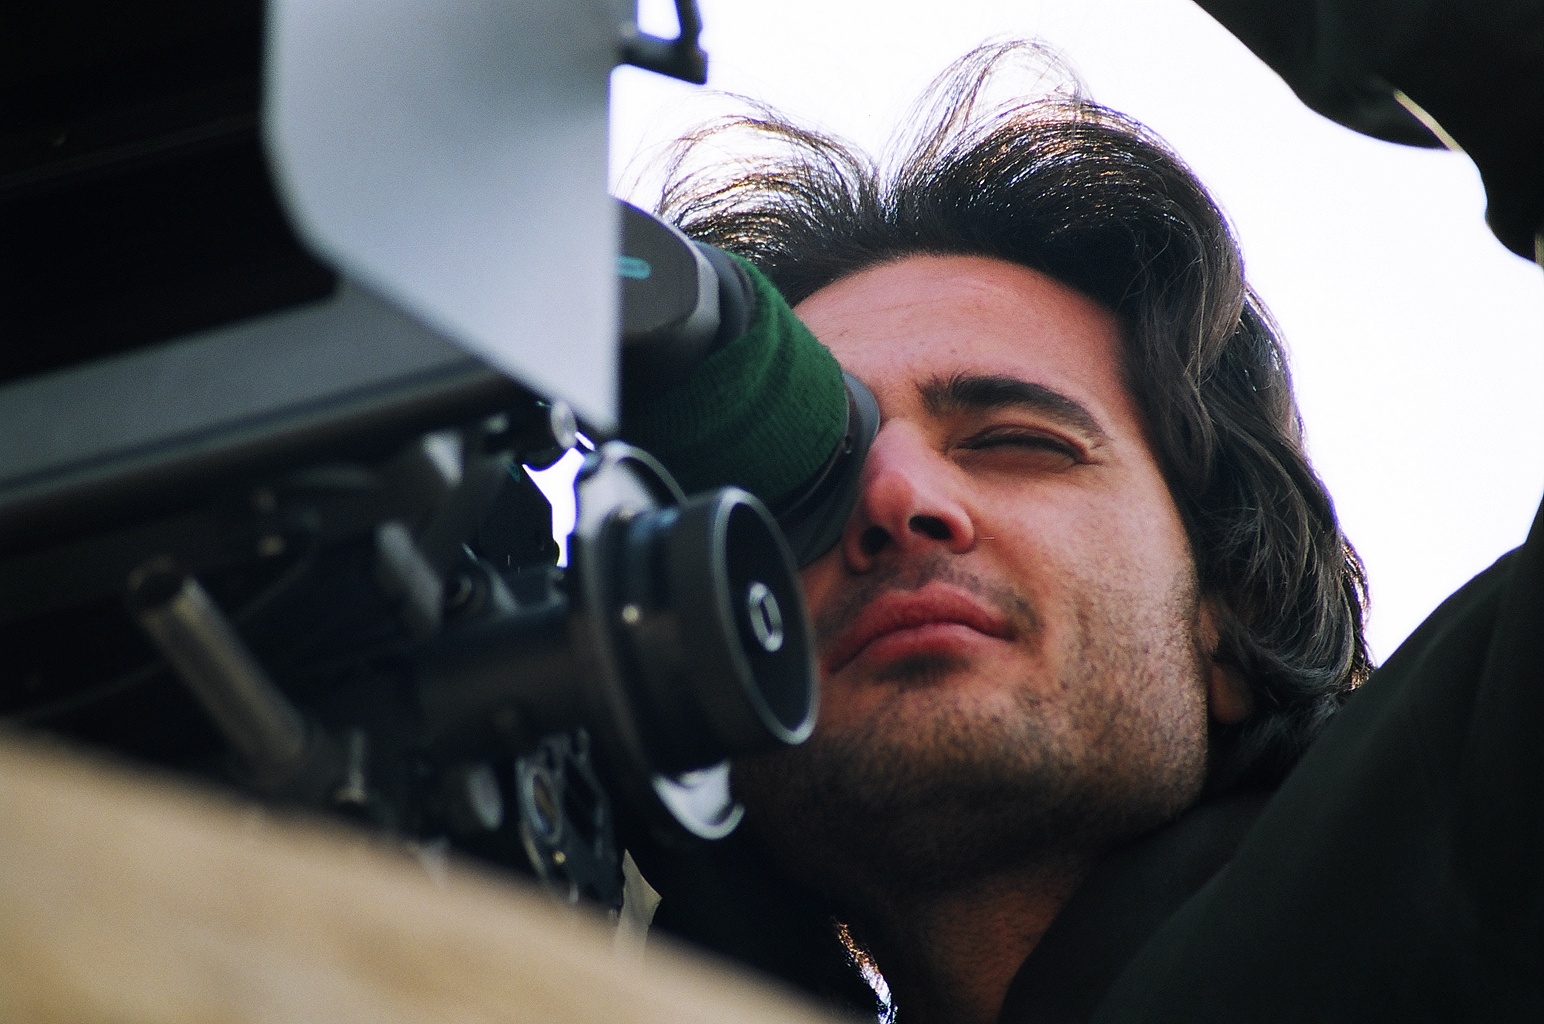 تصویری از حجت الله خسروی، تهیه کننده و مجری طرح سینما و تلویزیون در حال بازیگری سر صحنه یکی از آثارش